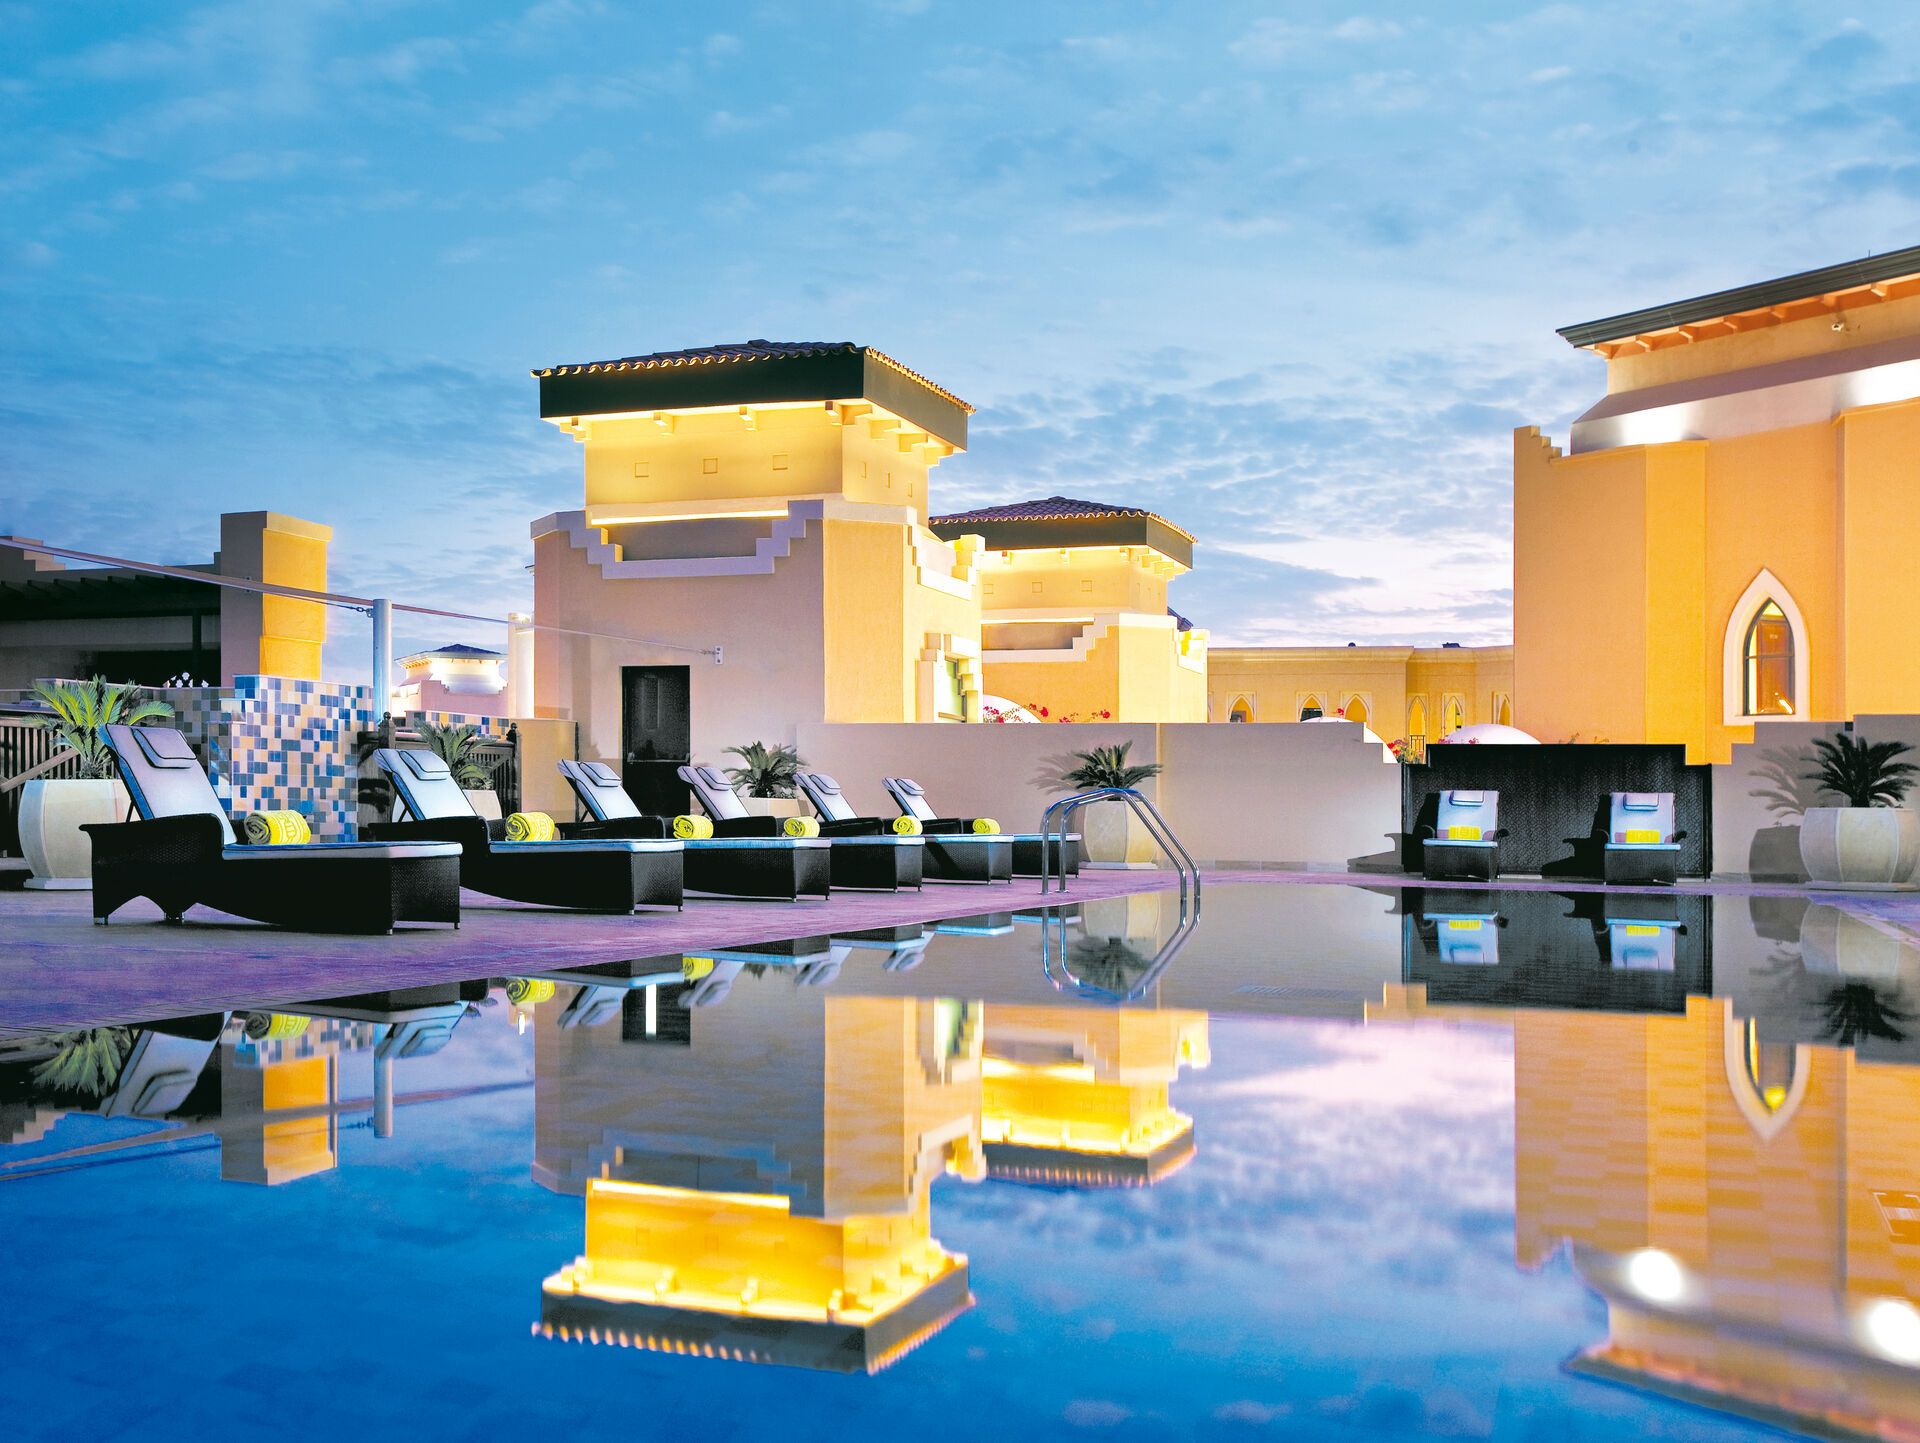 Emirats Arabes Unis - Abu Dhabi - Traders Hotel Qaryat Al Beri 4*